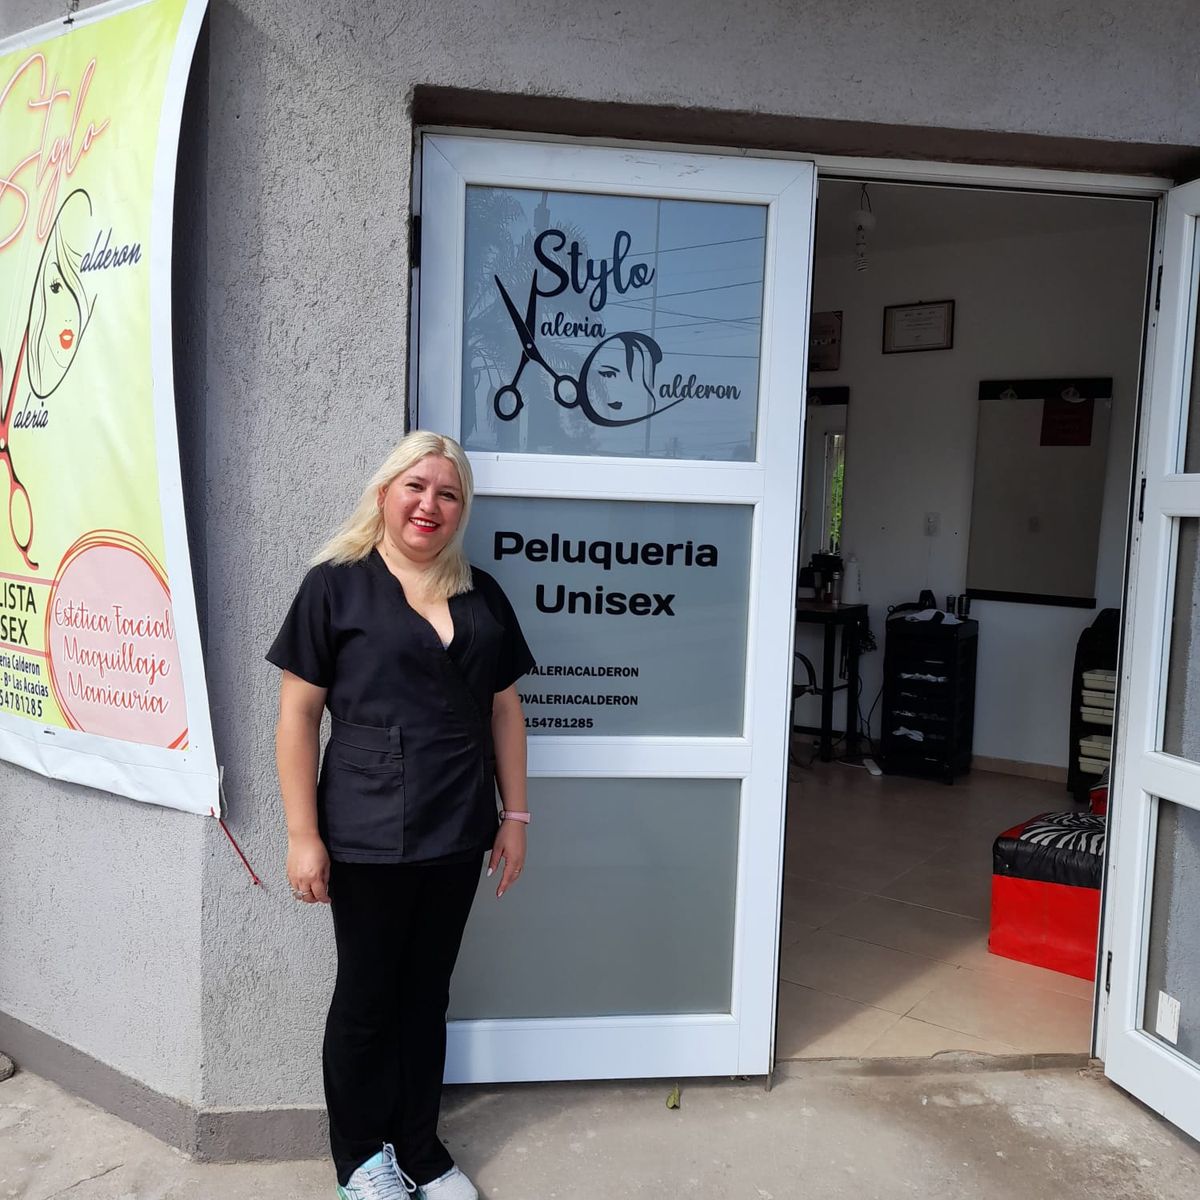 Valeria tiene su propio salón de peluquería en barrio Mariano Moreno. Abrió hace casi dos meses. Pese a su buen presente laboral